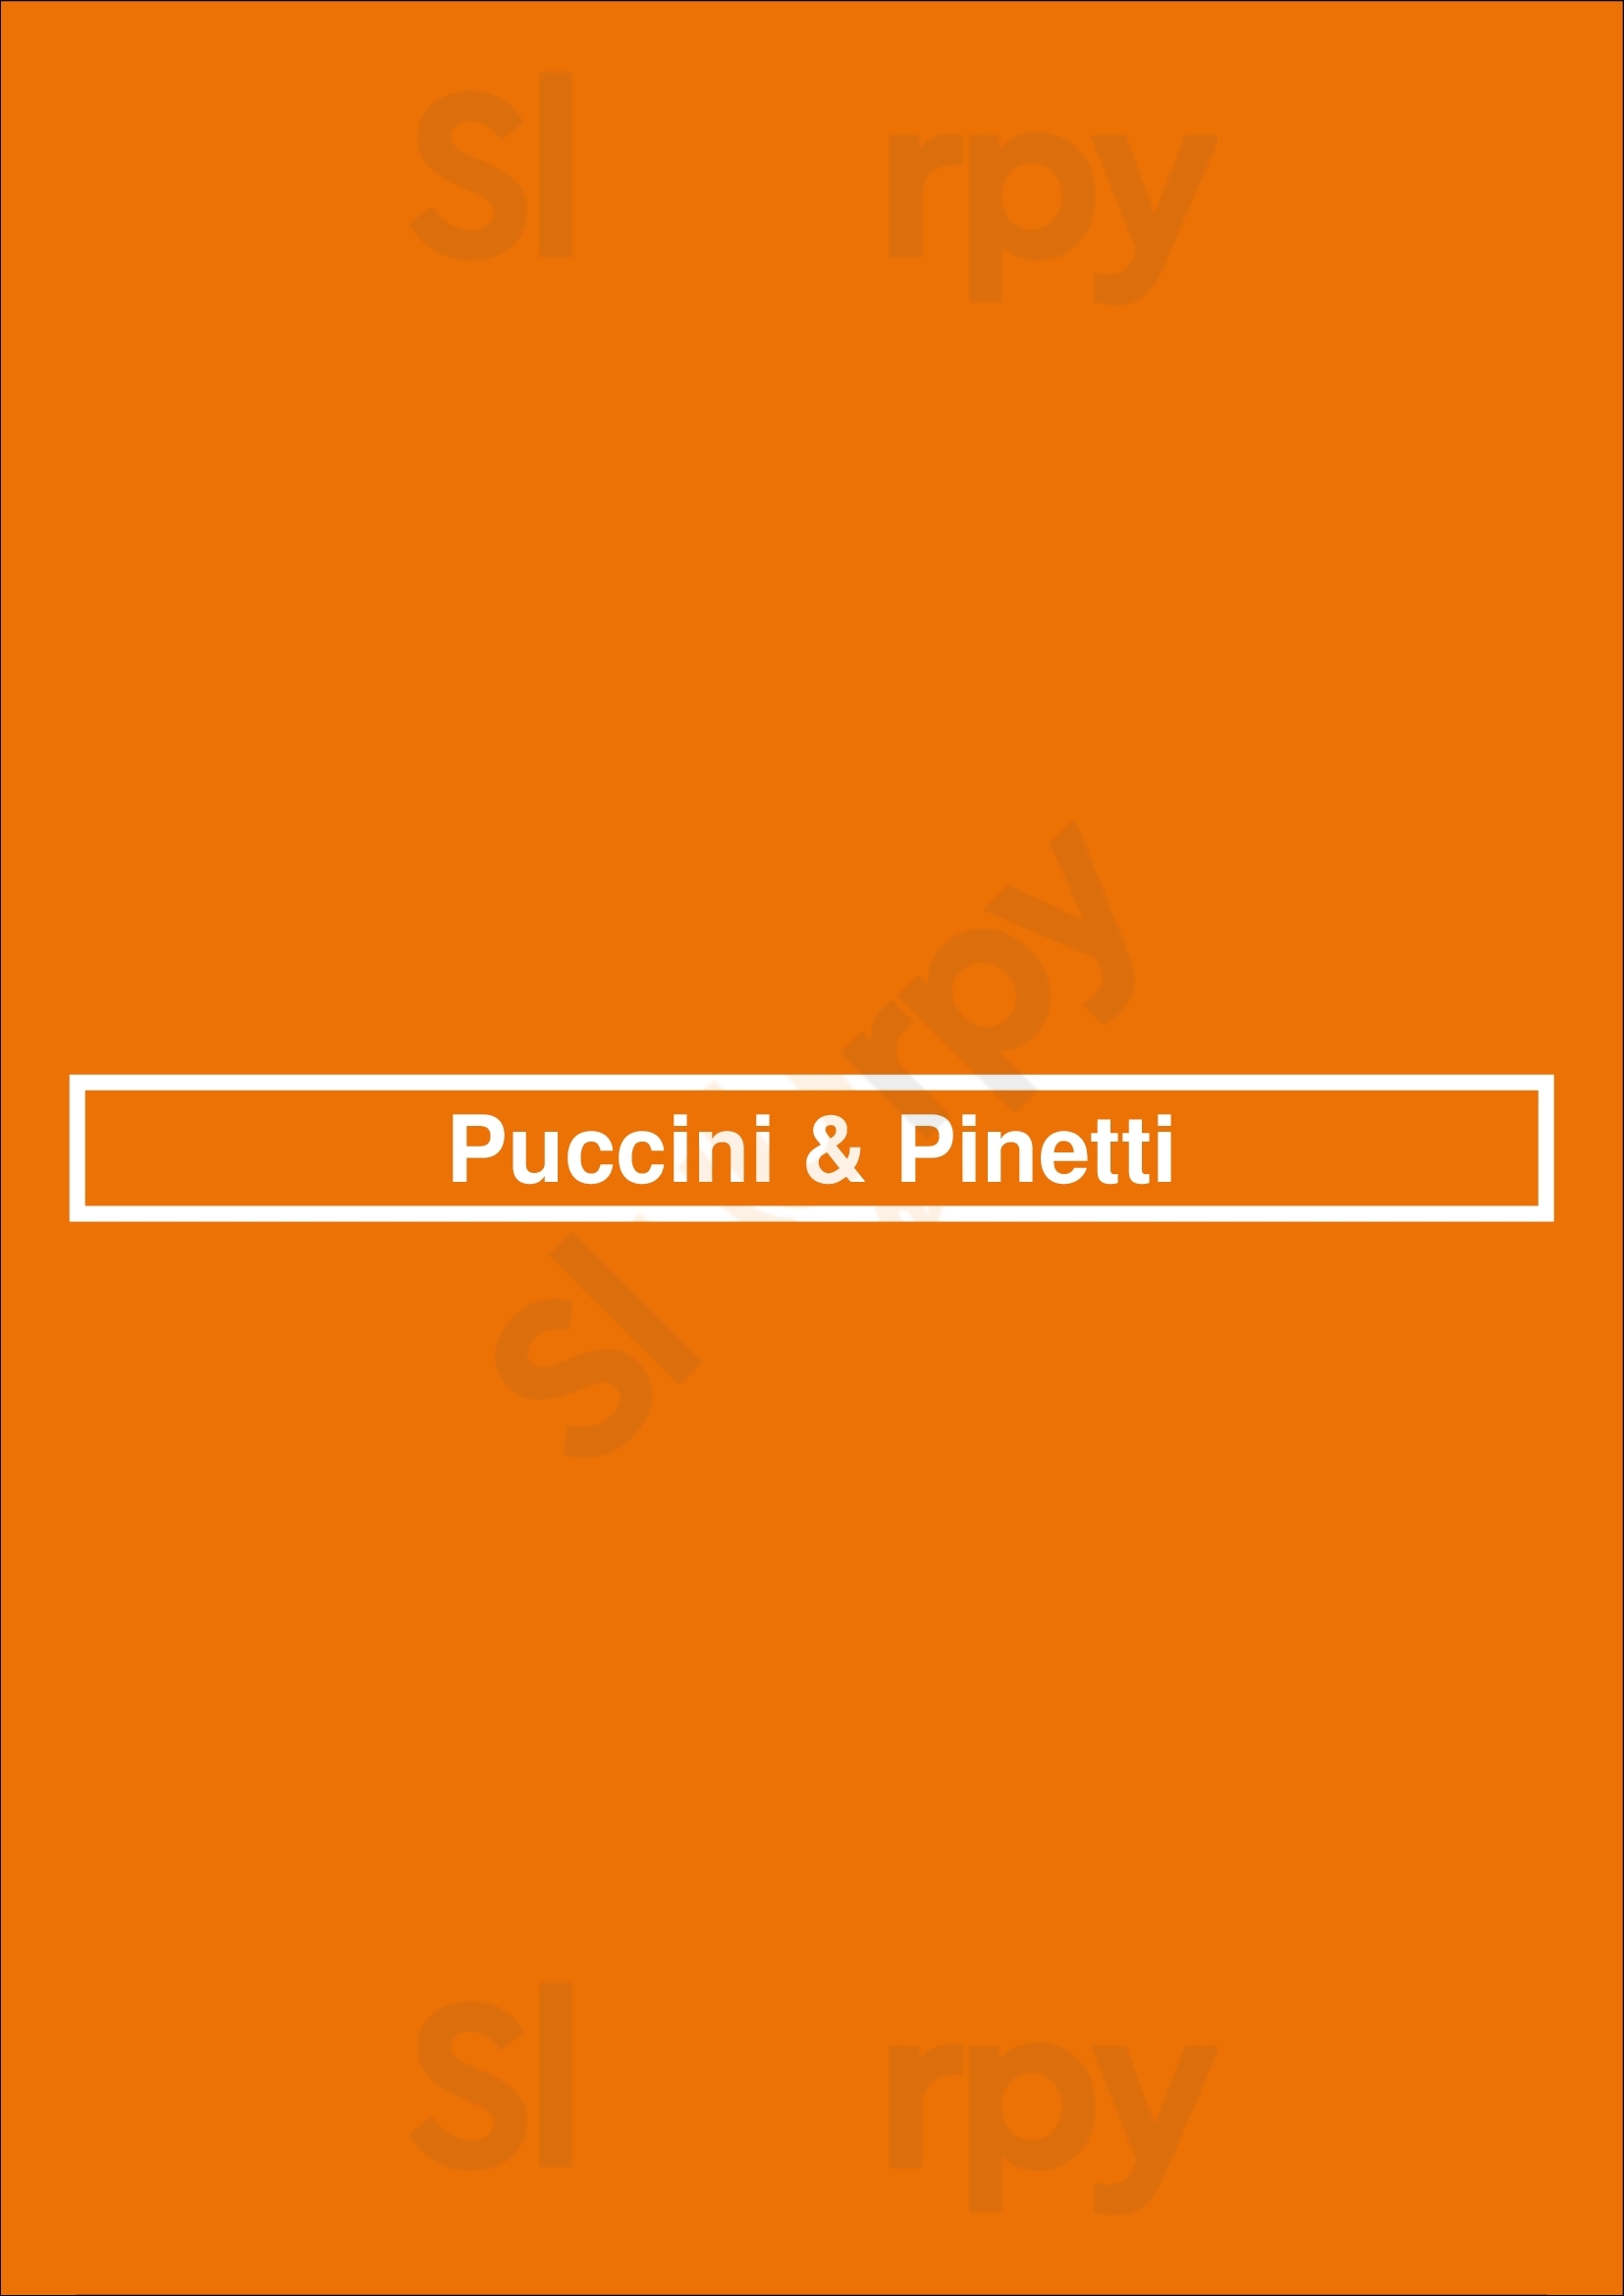 Puccini & Pinetti San Francisco Menu - 1